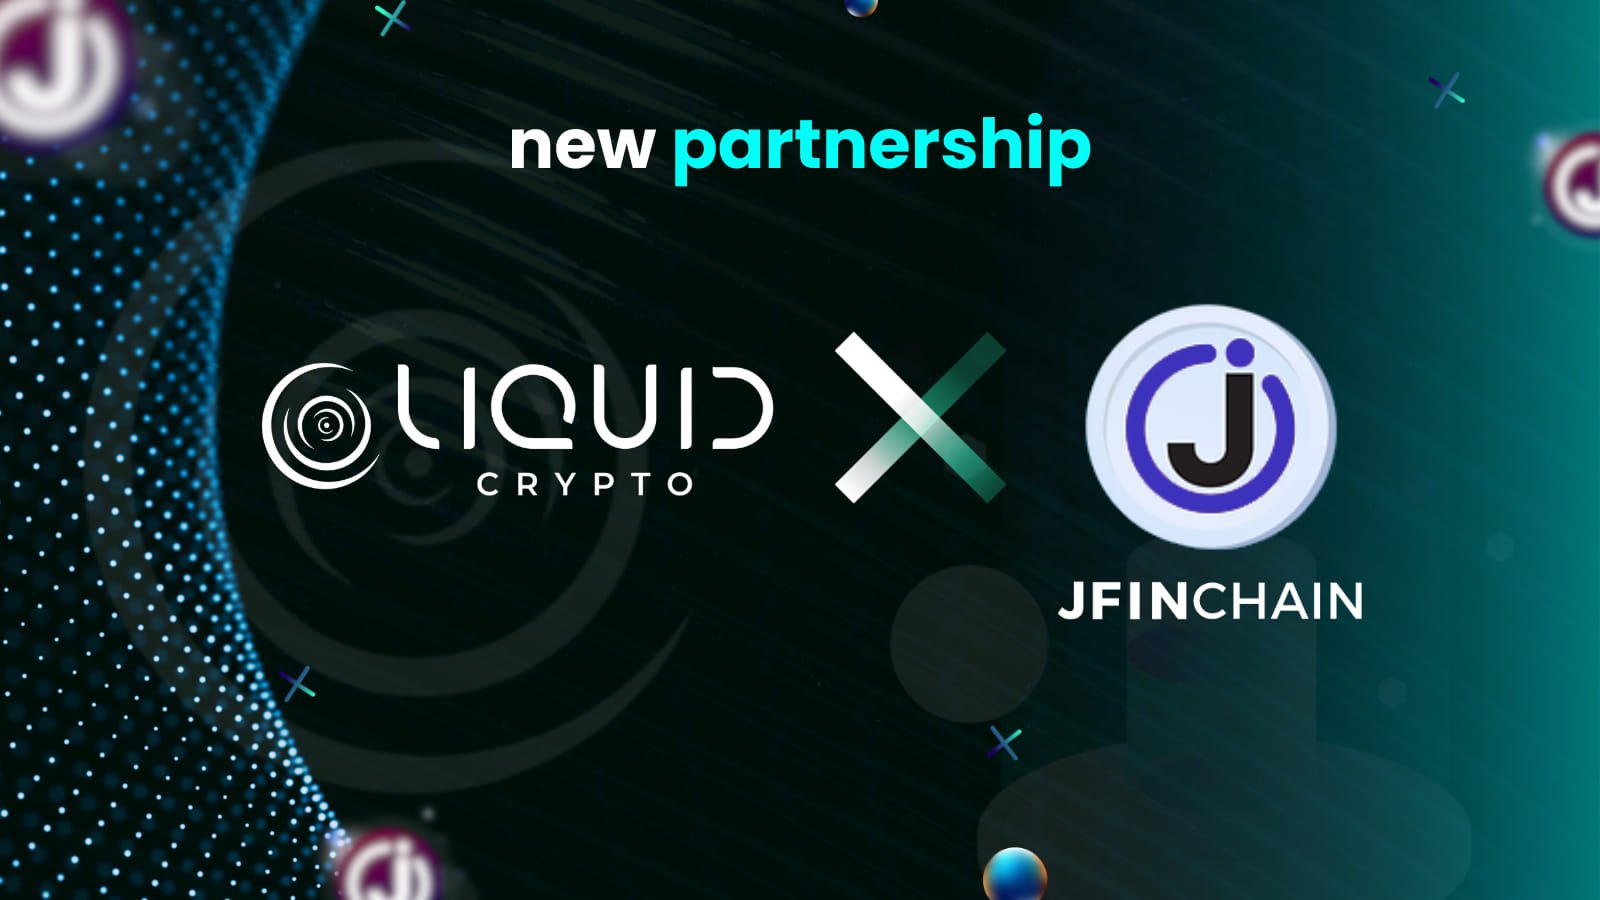 "เจ เวนเจอร์ส" นำ JFIN Chain ขยายการเติบโต จับมือ "Liquid Crypto" มุ่งสร้างอีโคซิสเต็มบล็อกเชนแข็งแกร่ง